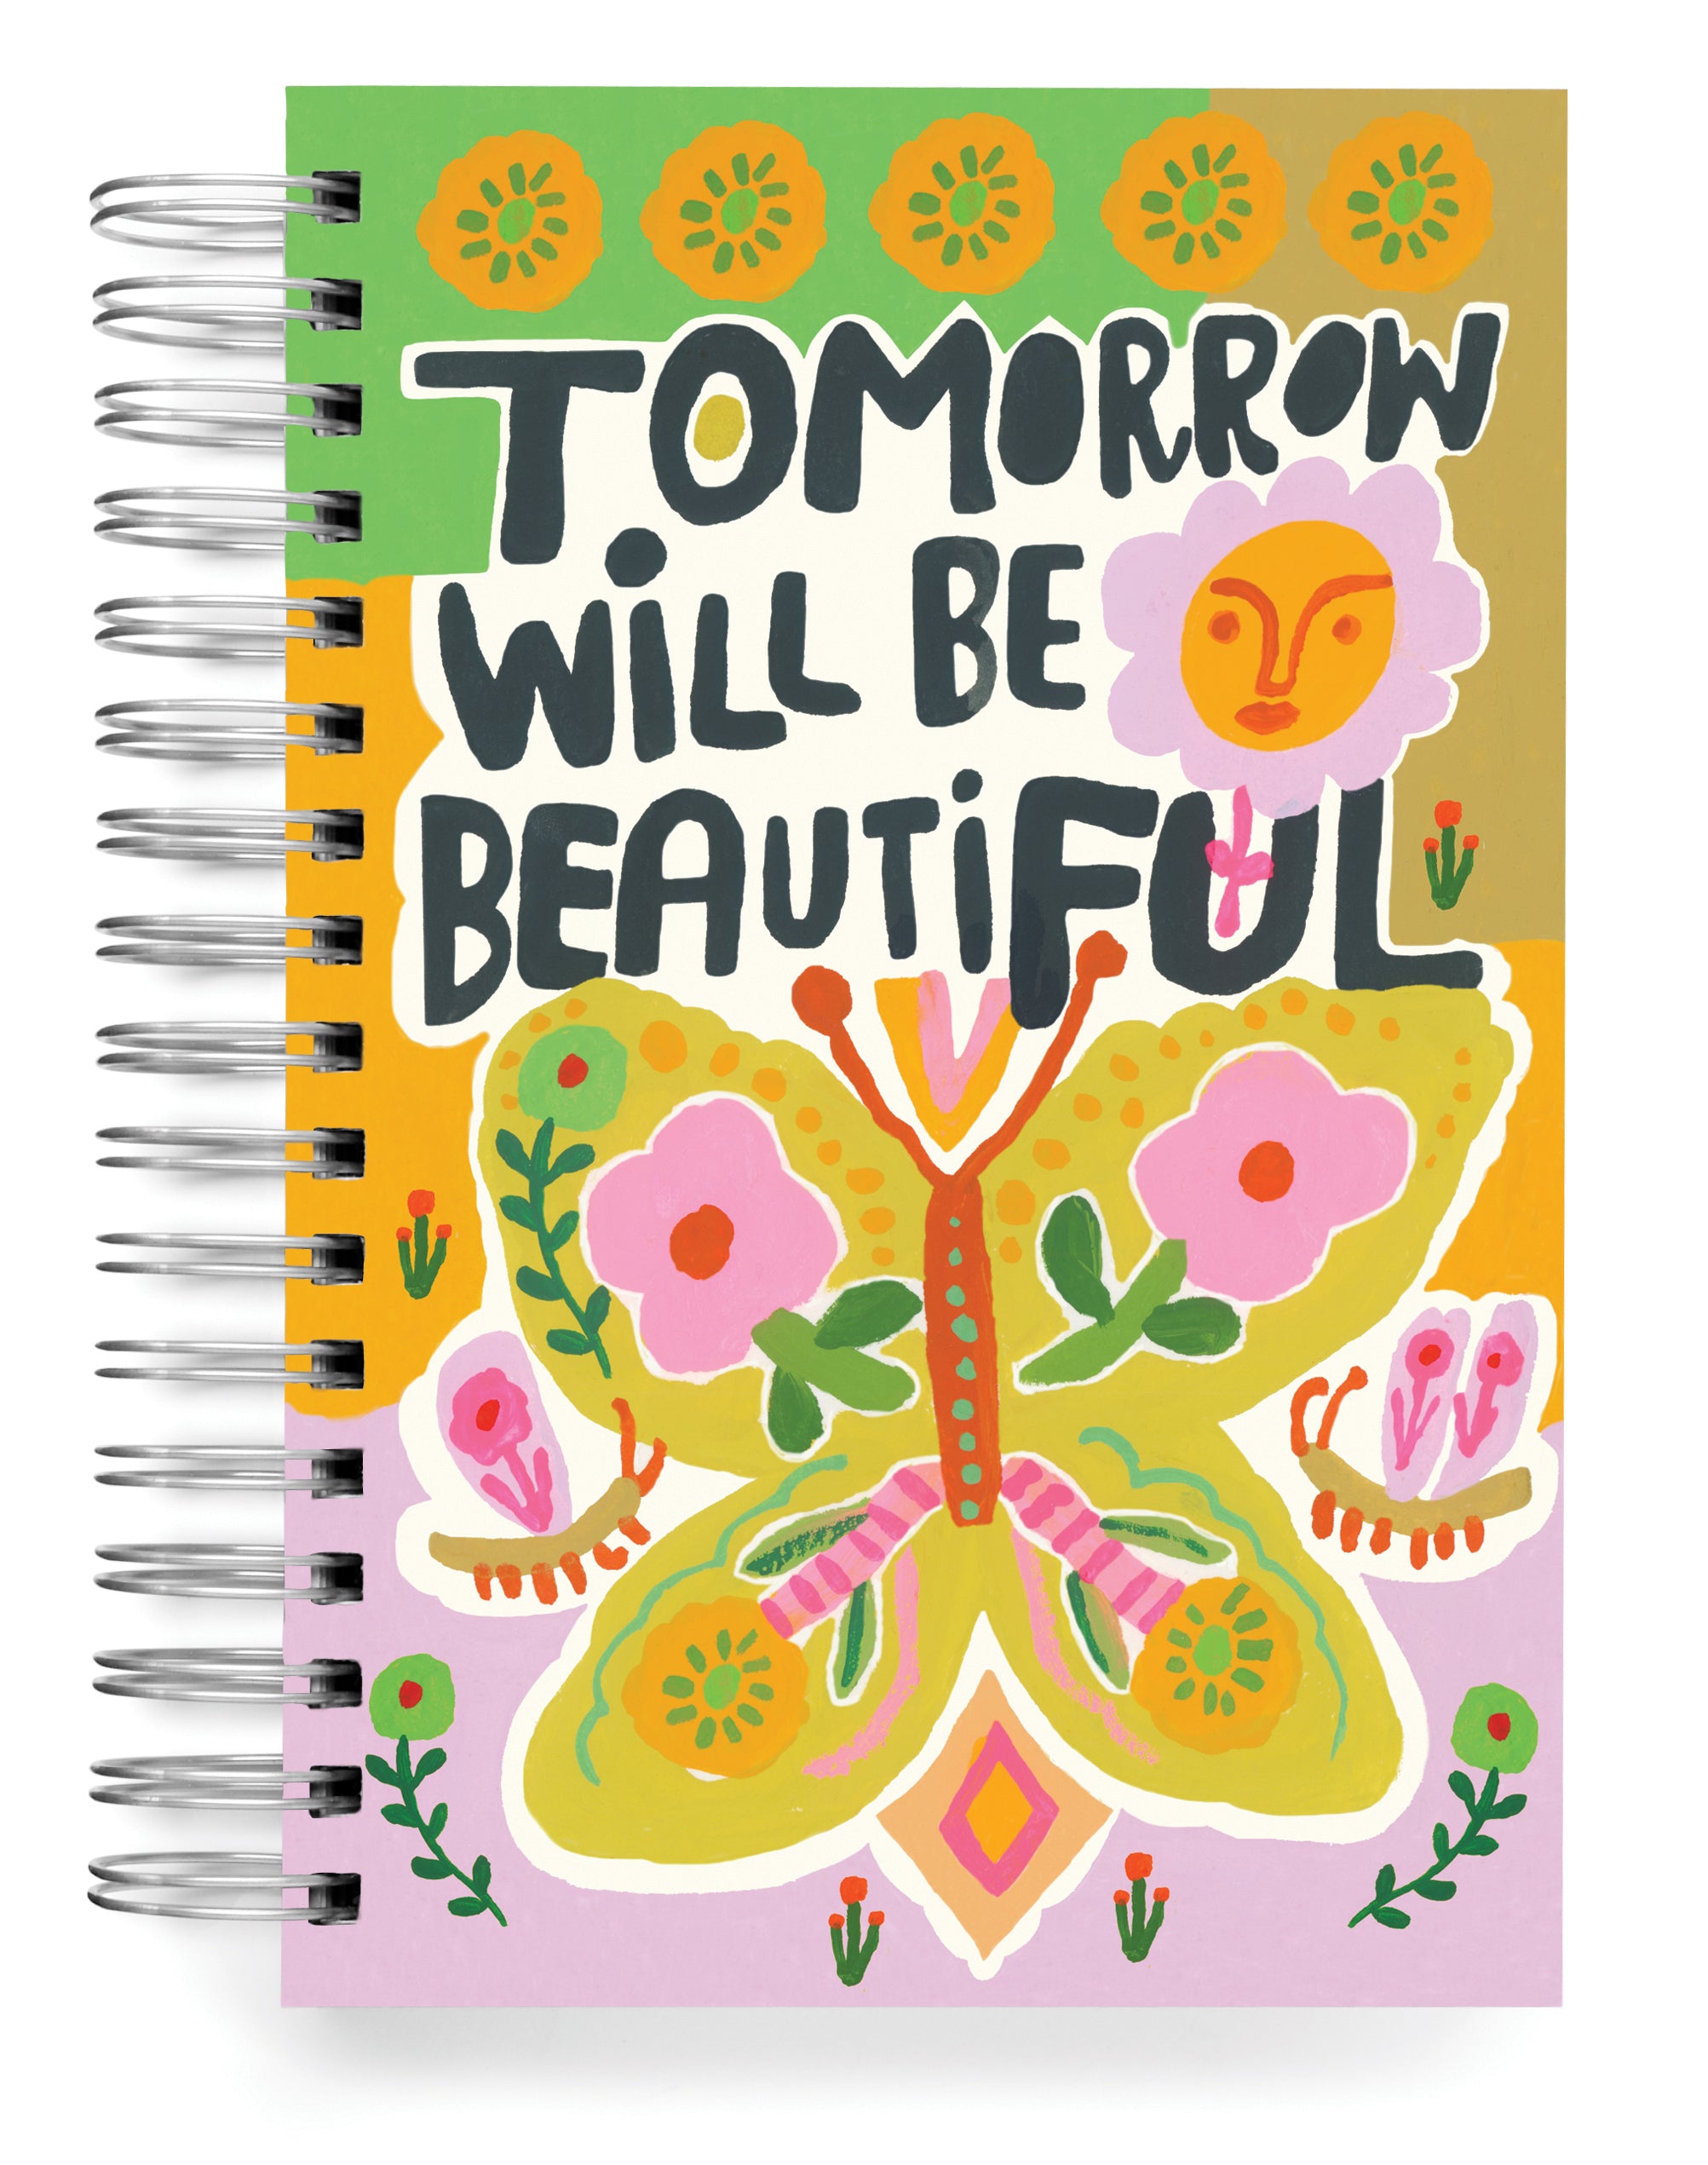 Tomorrow will be beautiful Jumbo Journal